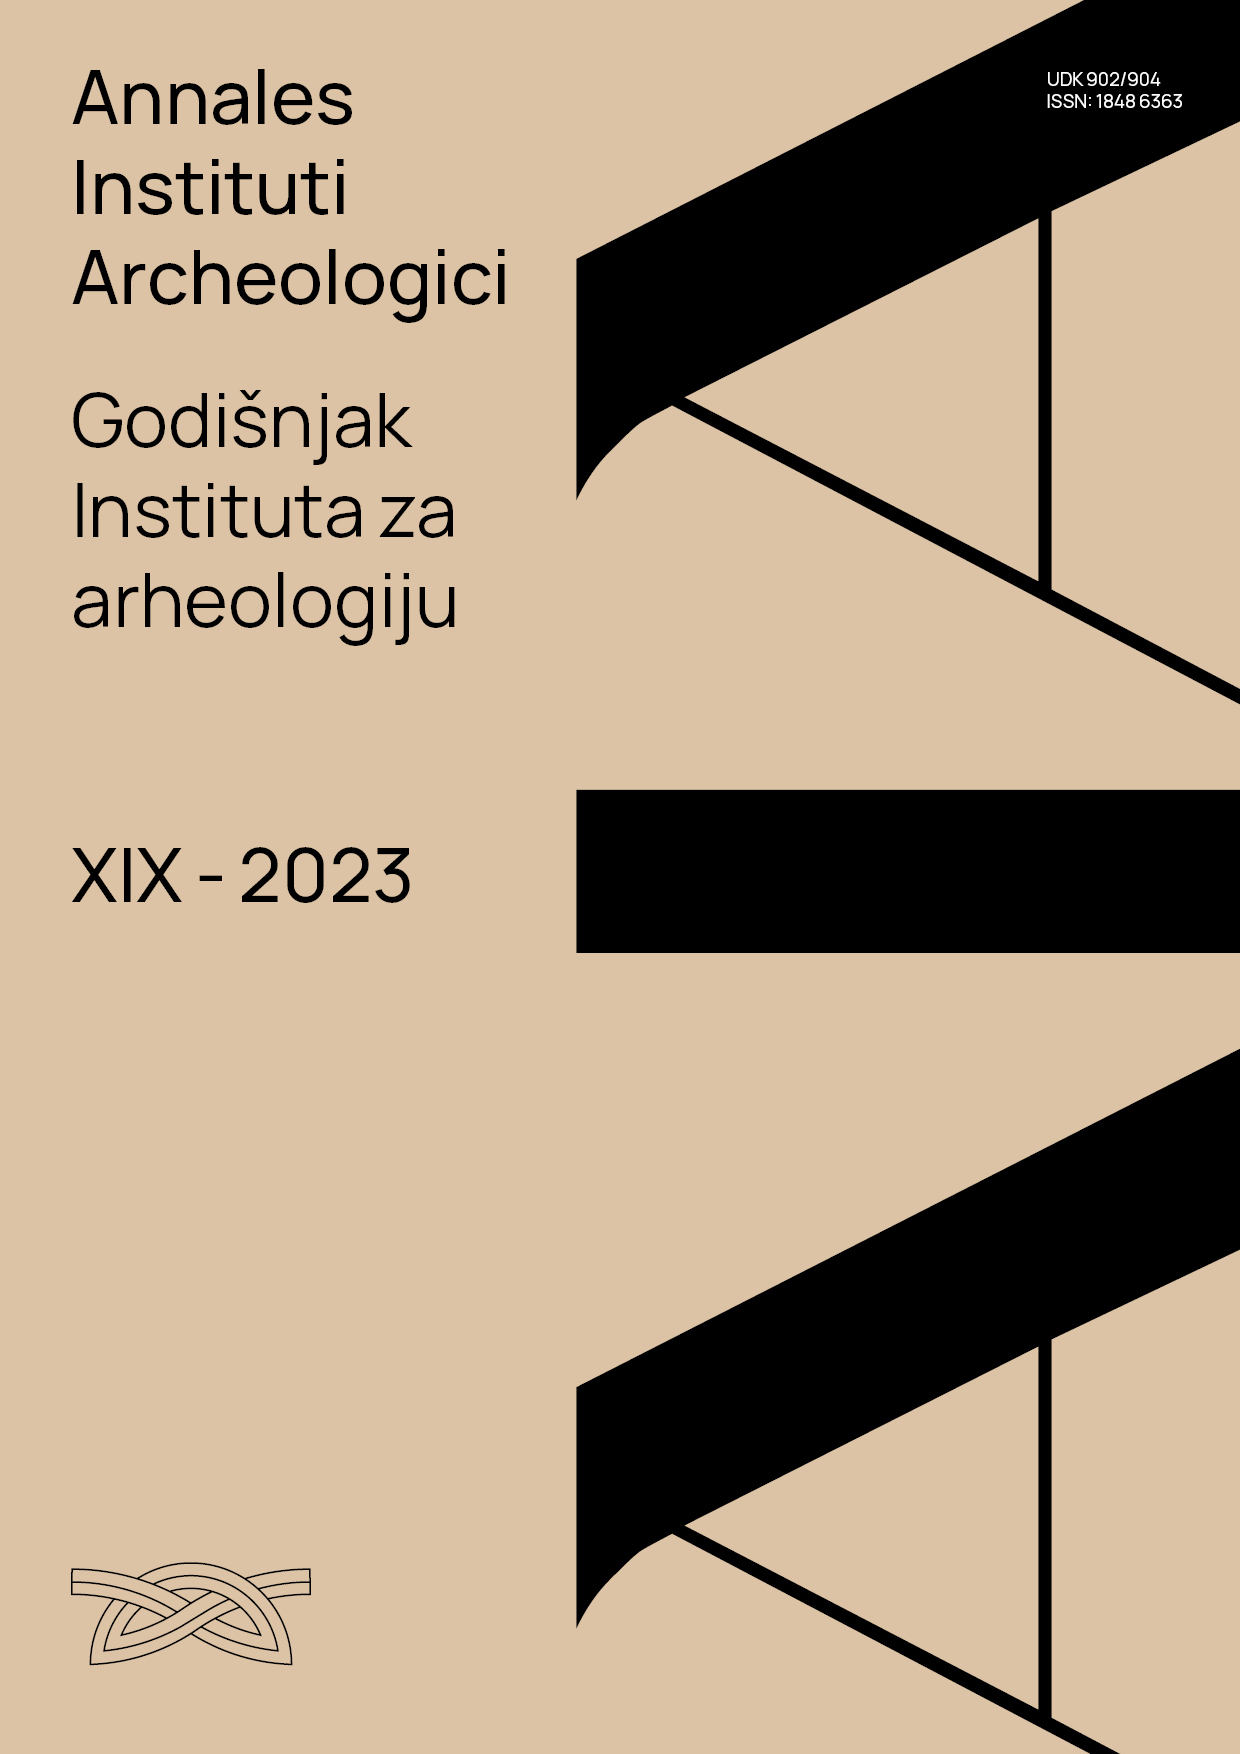 logo Annales Instituti Archaeologici